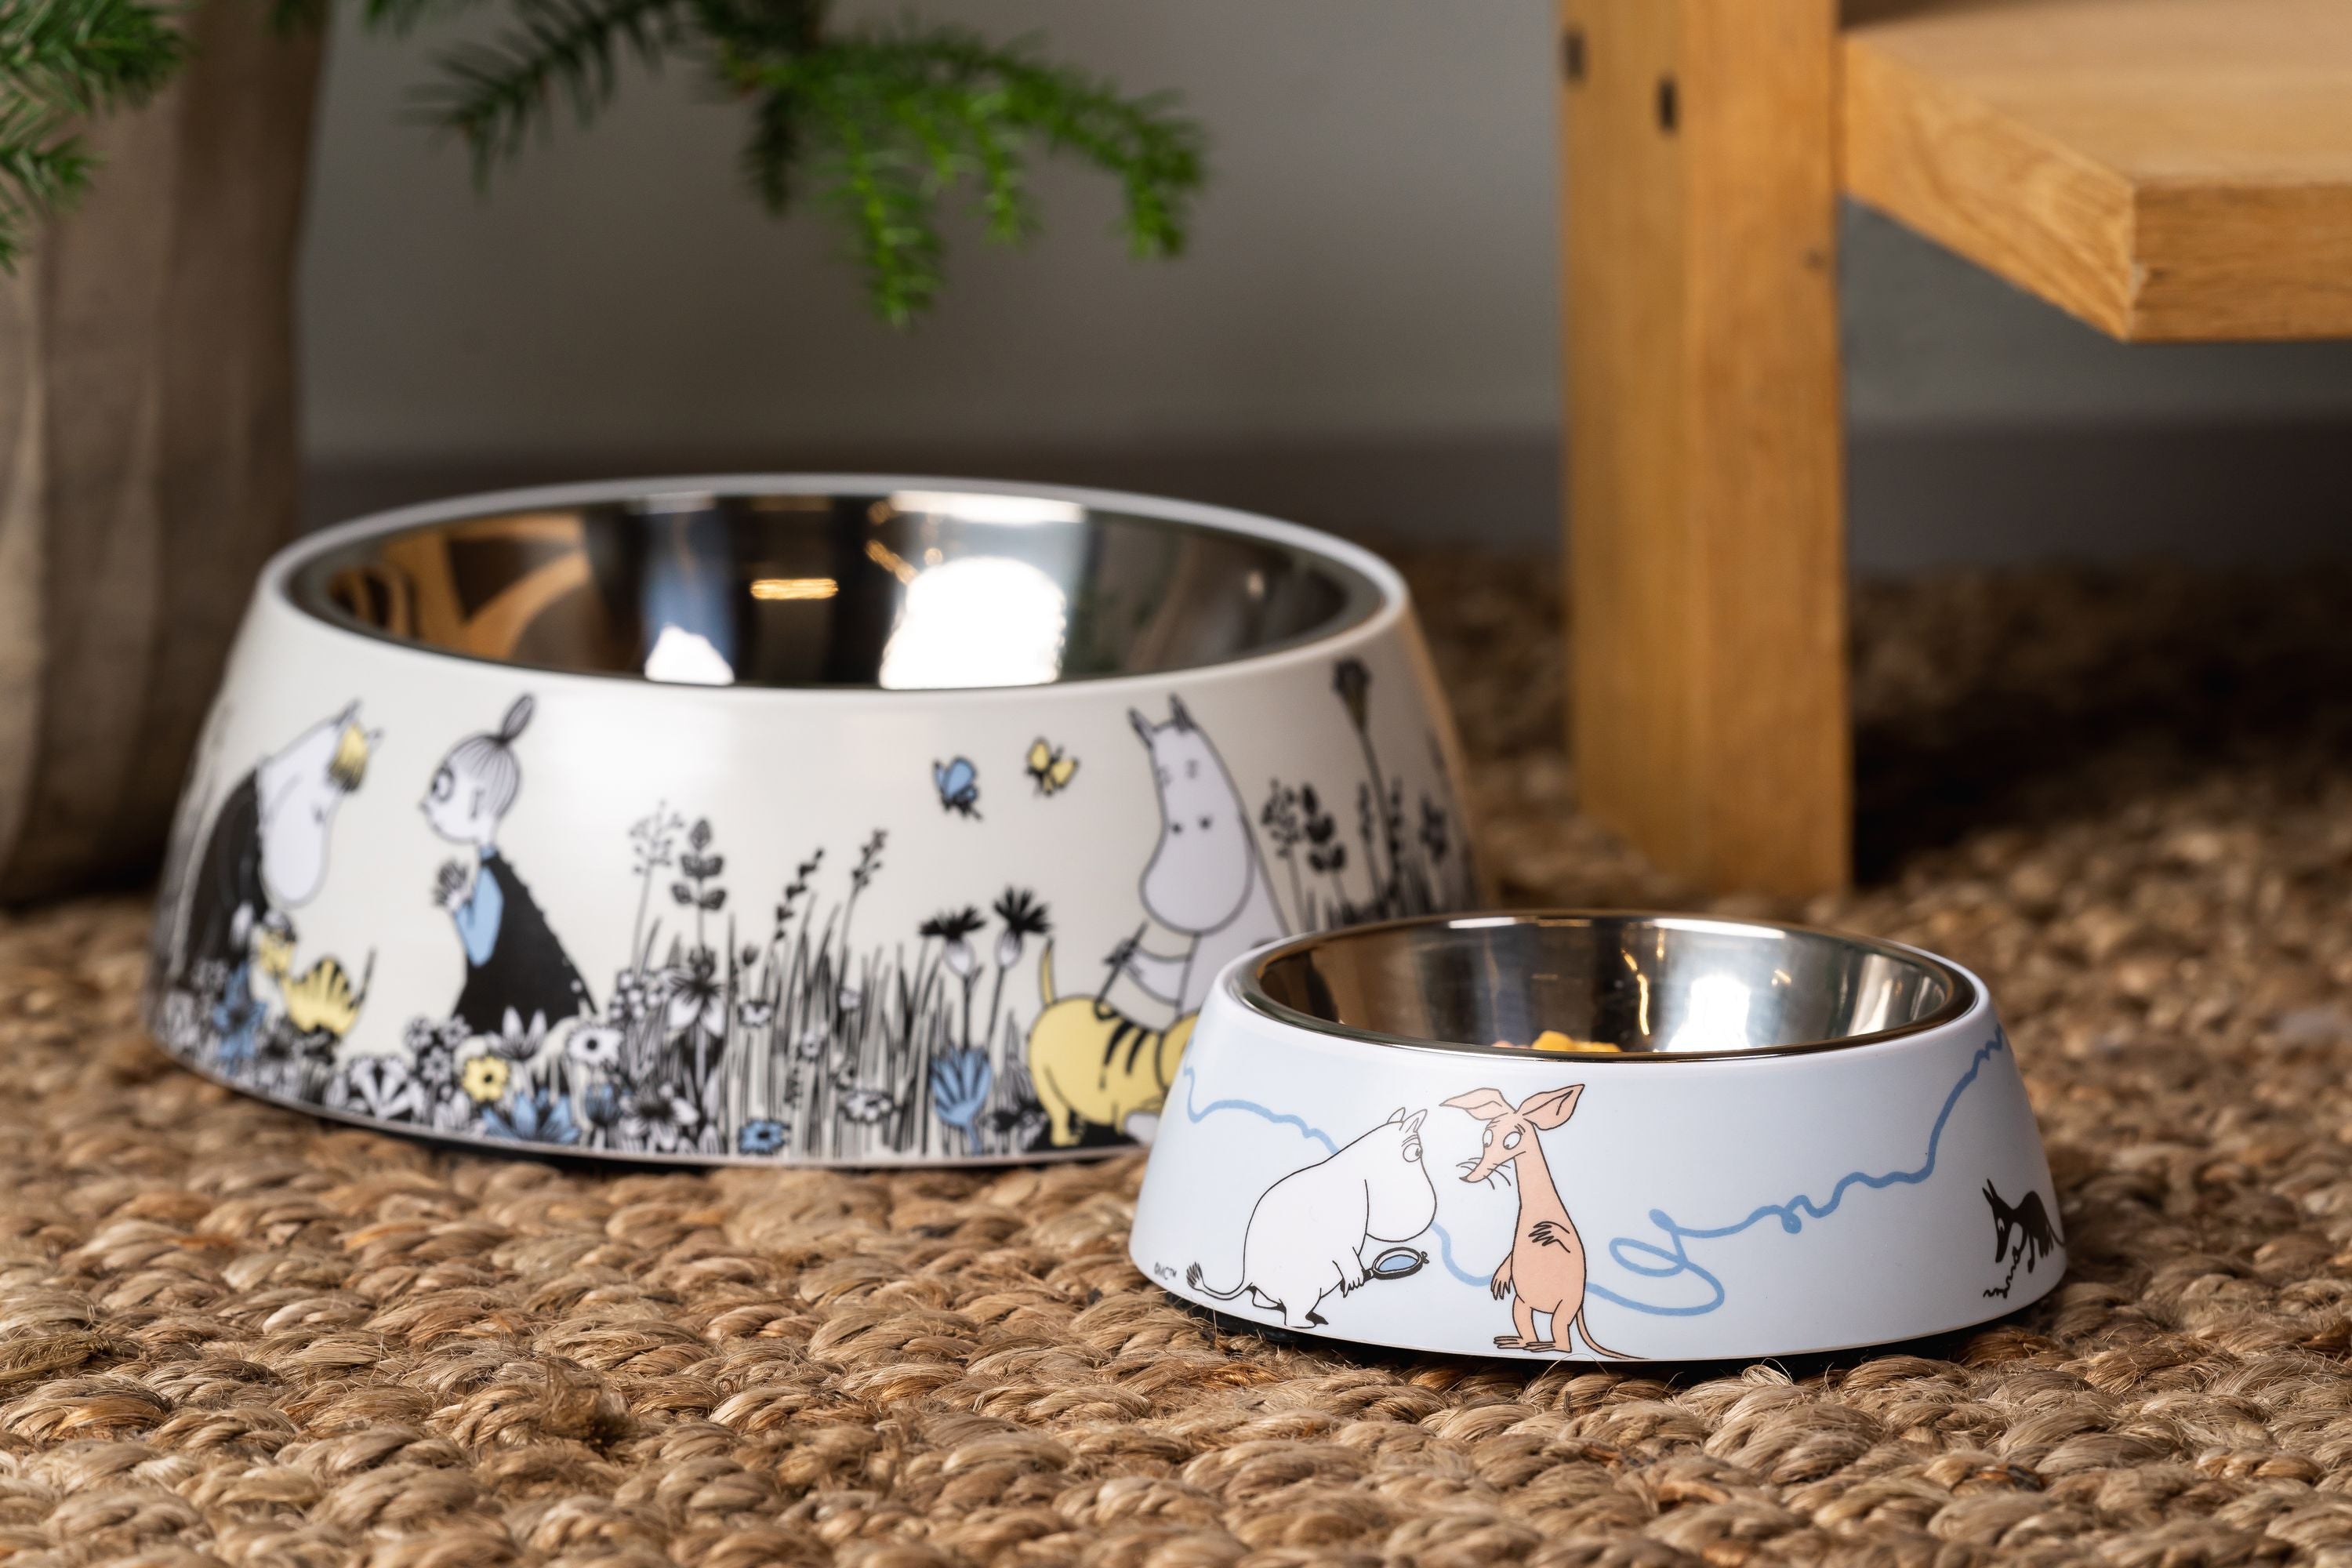 Muurla Moomin Pets Food Bowl S, azul